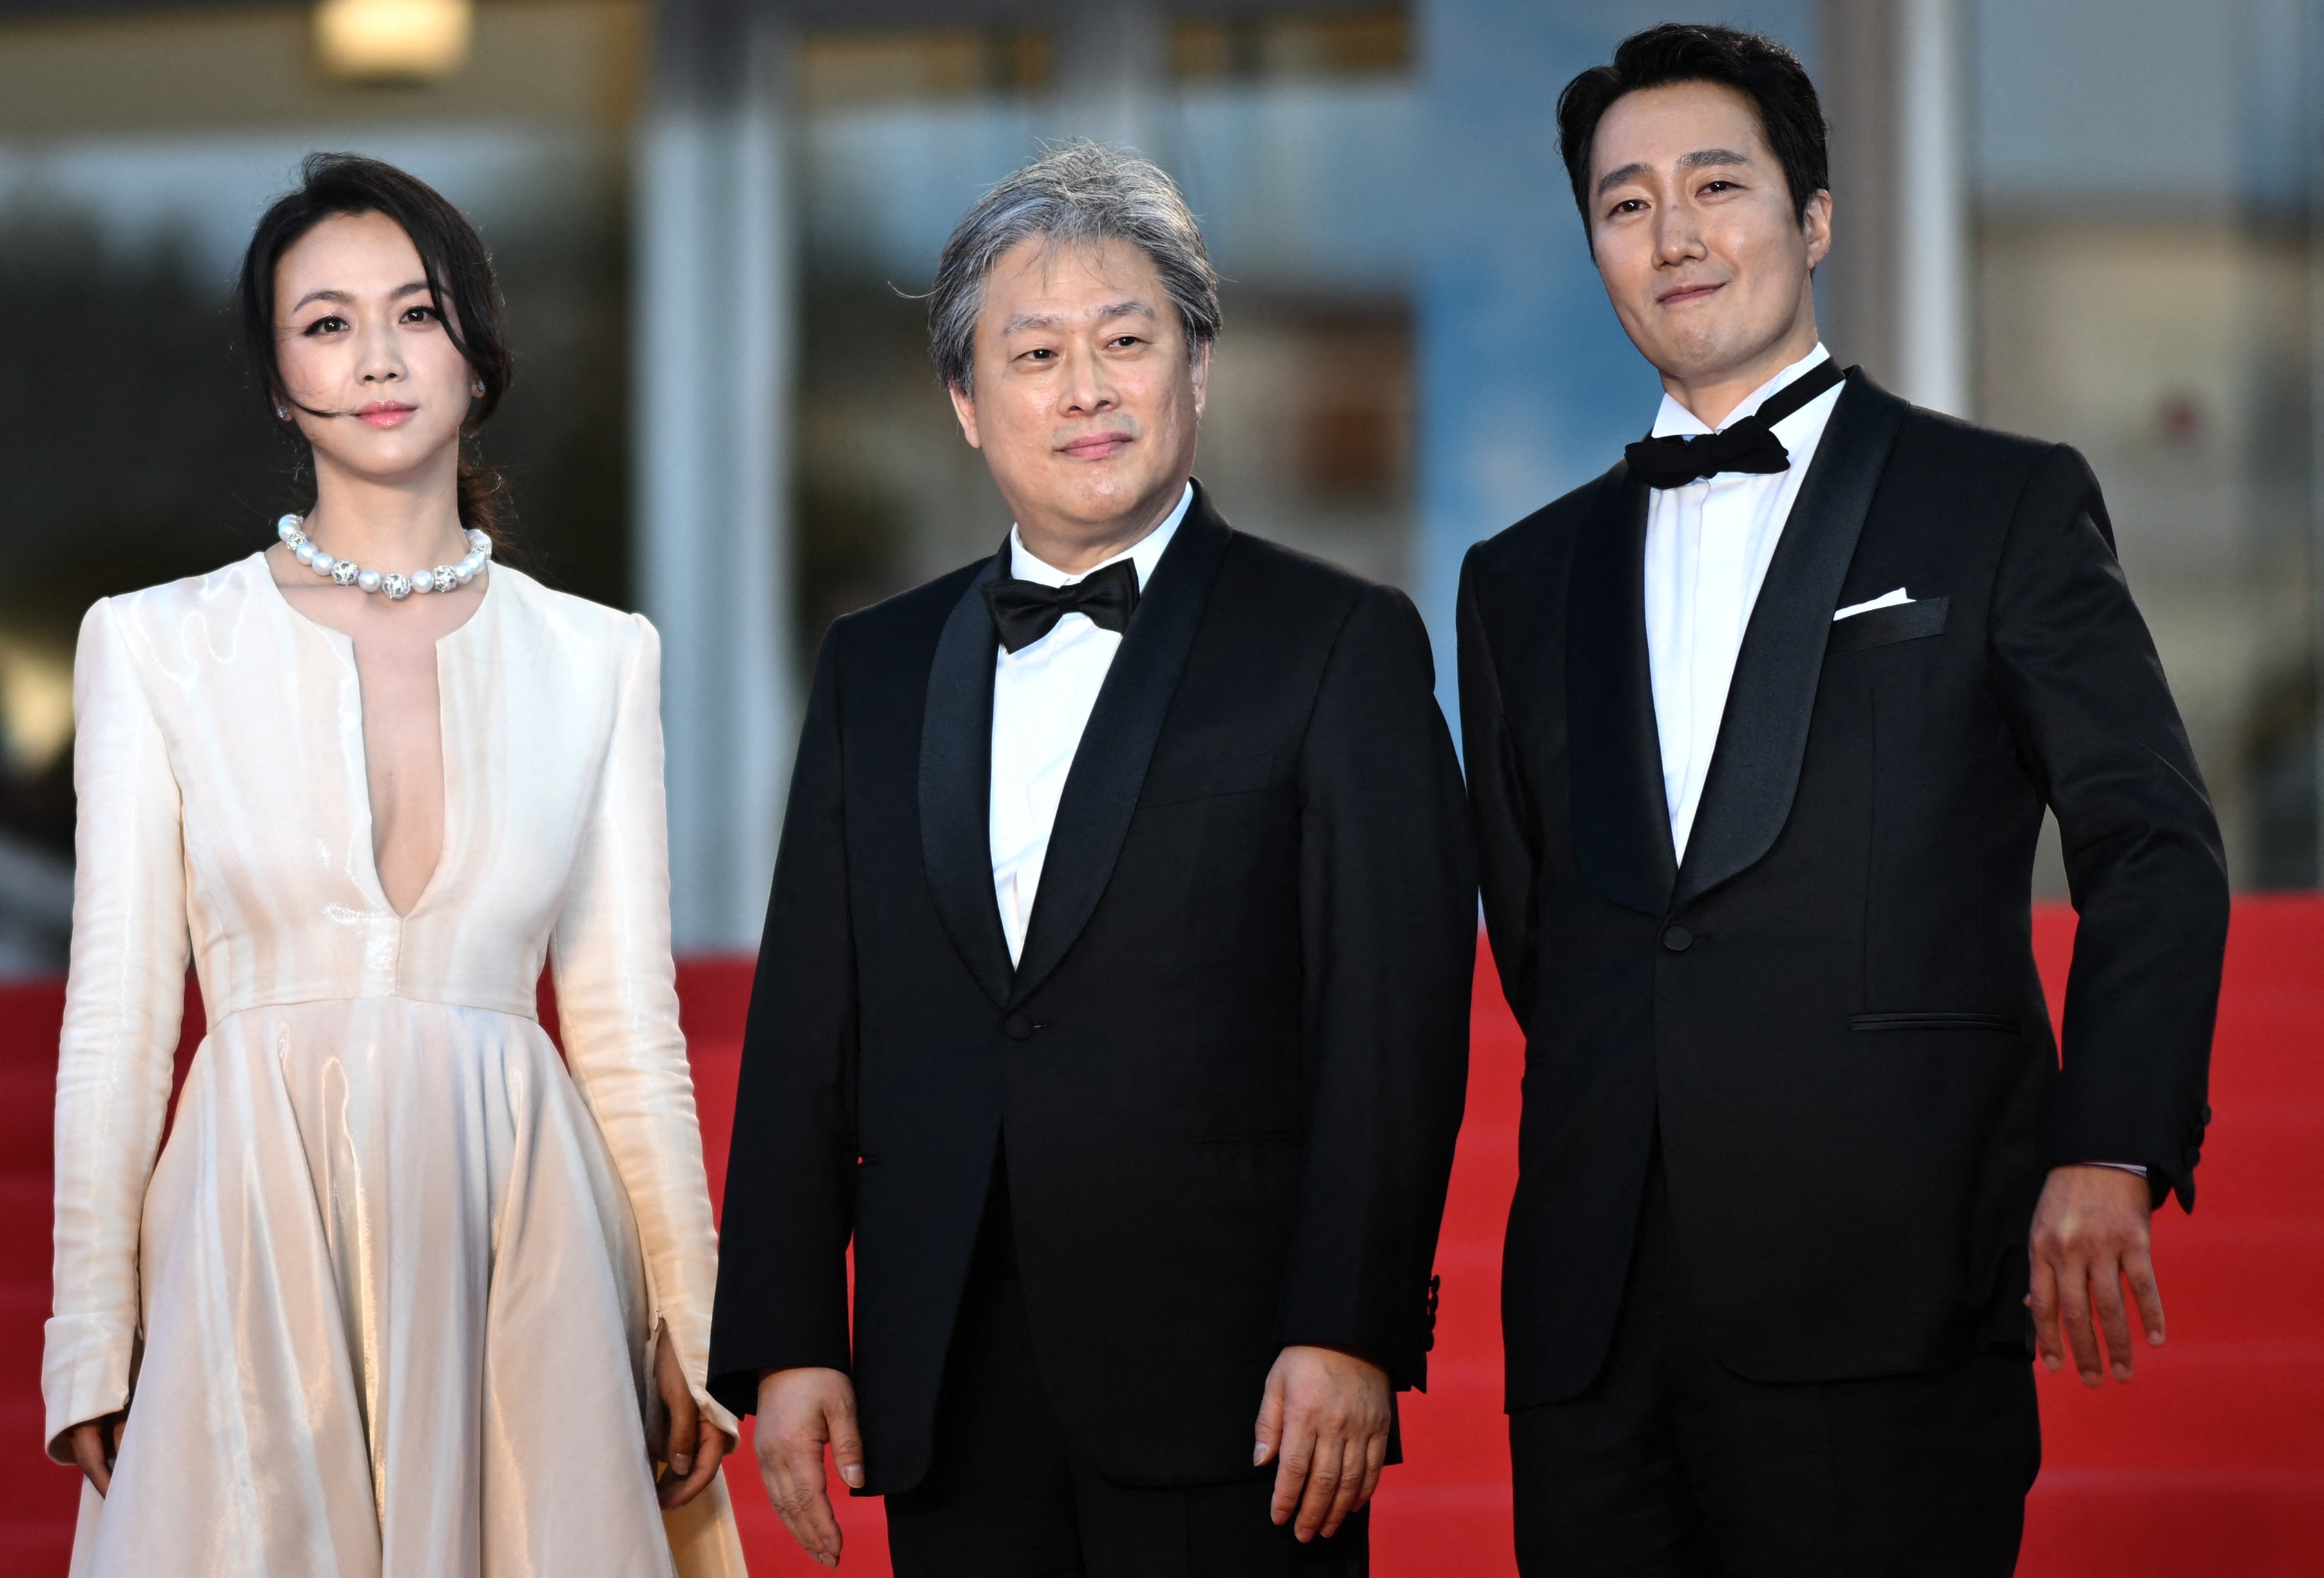 Diretor sul-coreano Park Chan-wook volta ao Festival de Cannes com drama policial e romântico